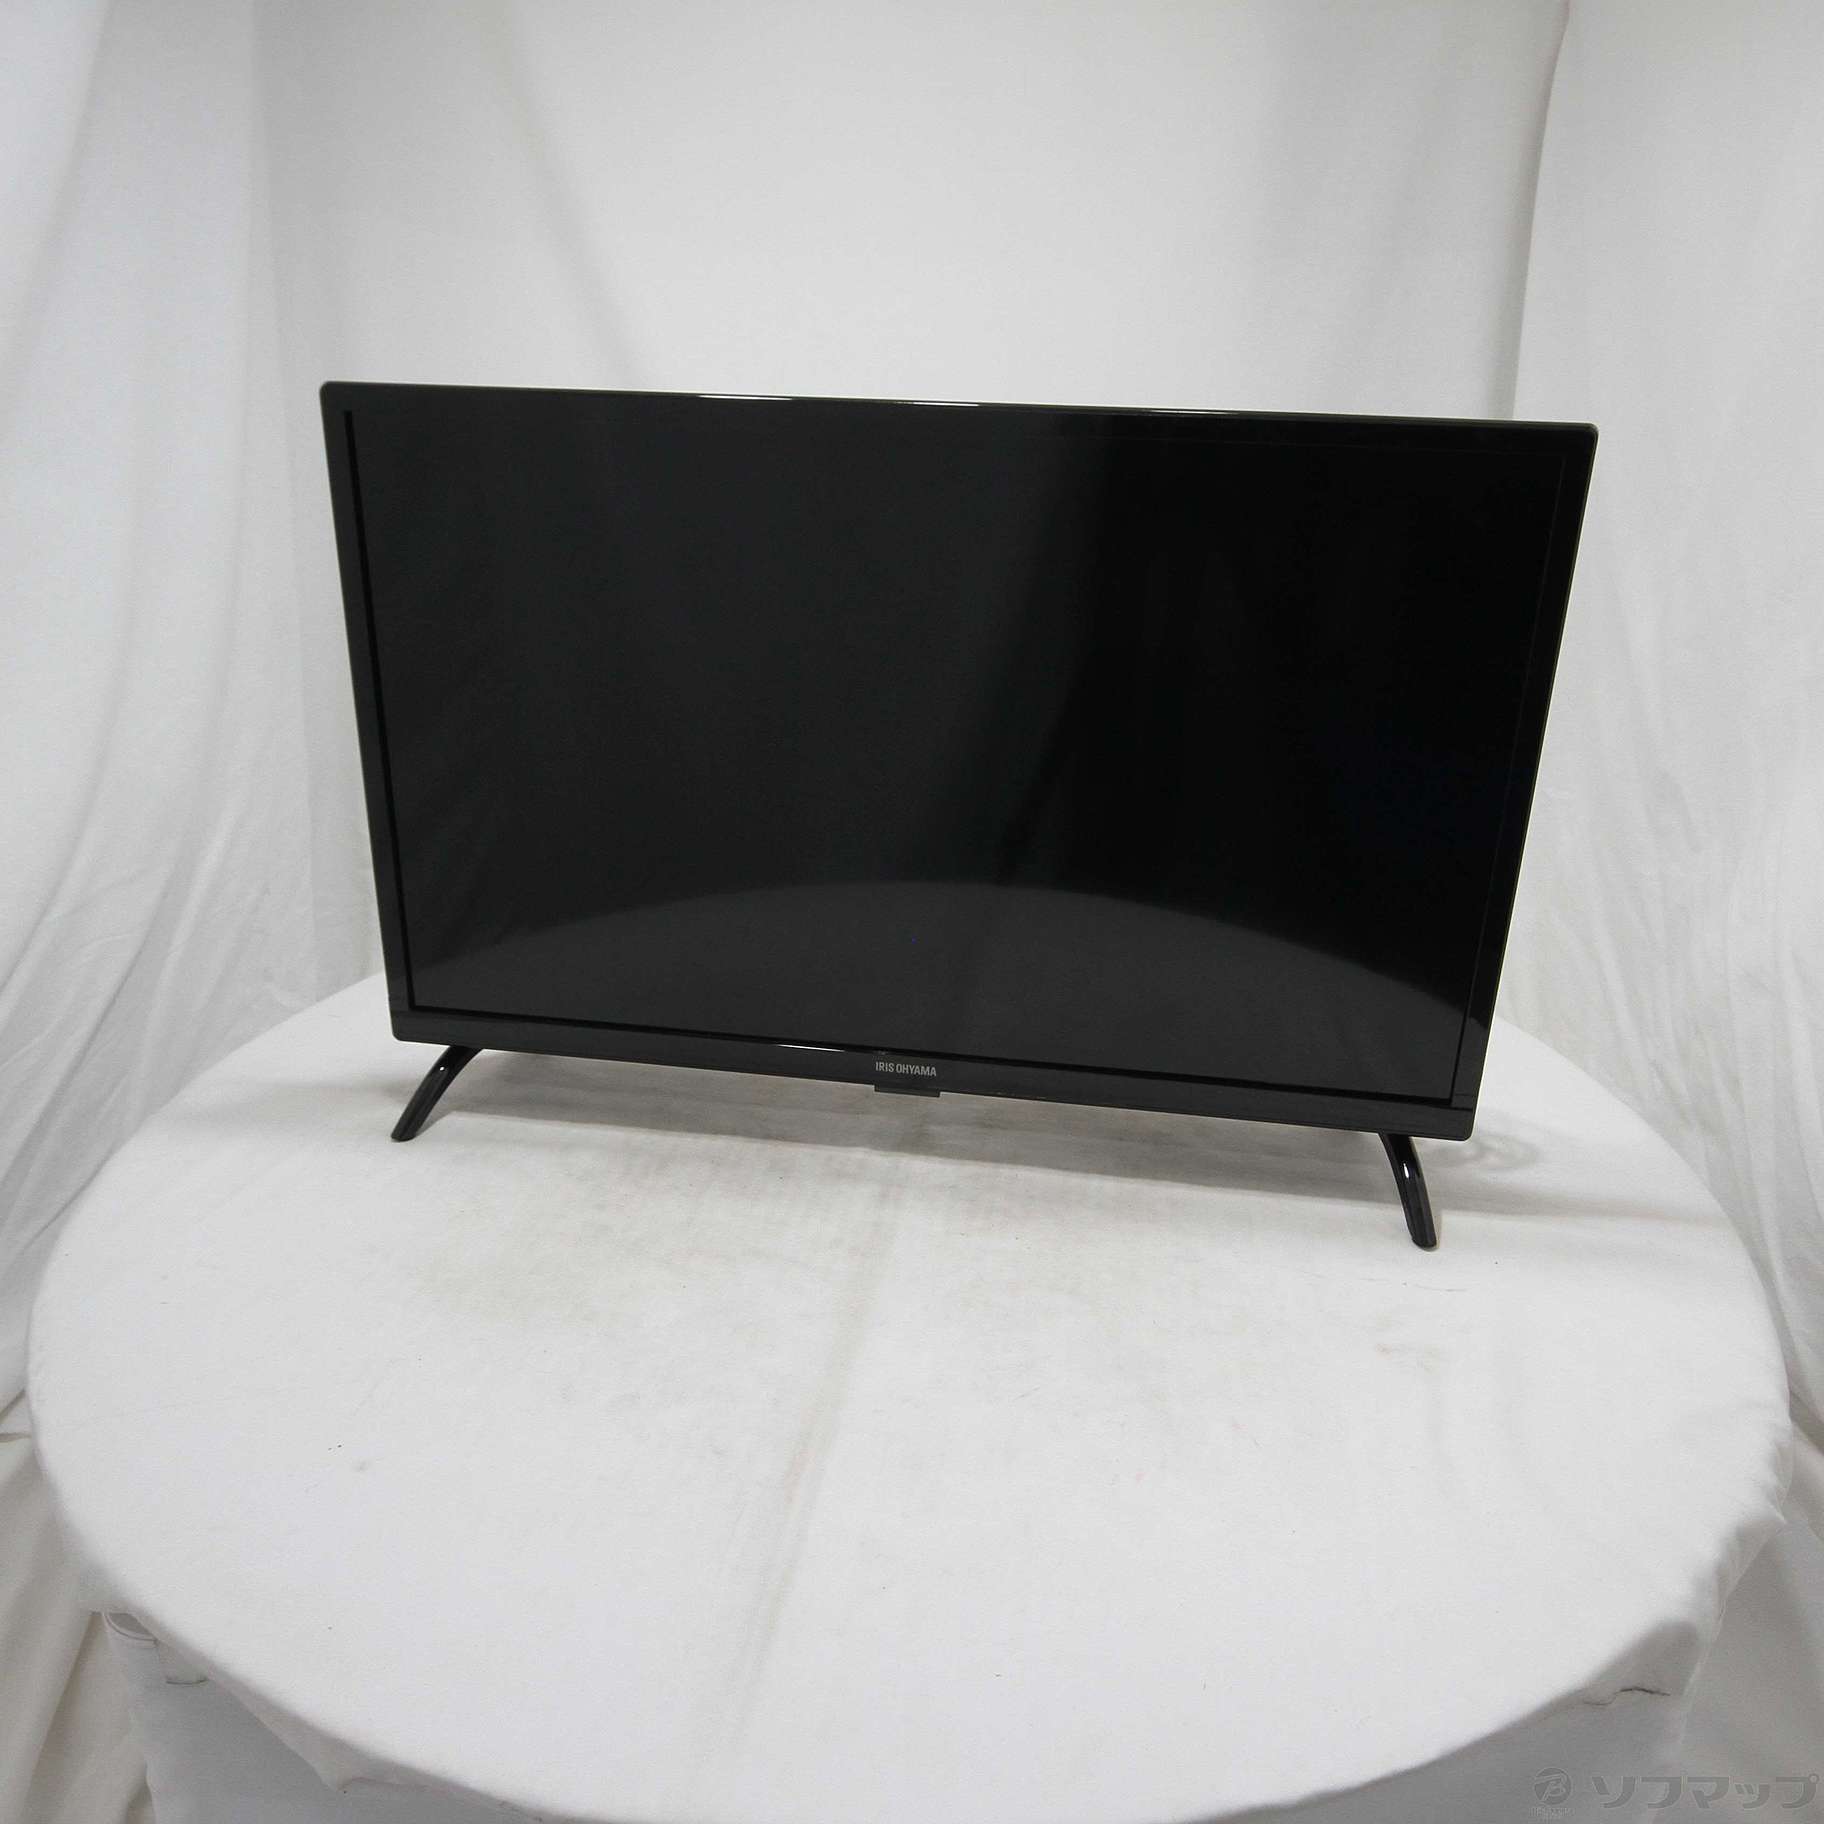 アイリスオーヤマ ハイビジョン液晶テレビ 24V型 ブラック LT-24B320